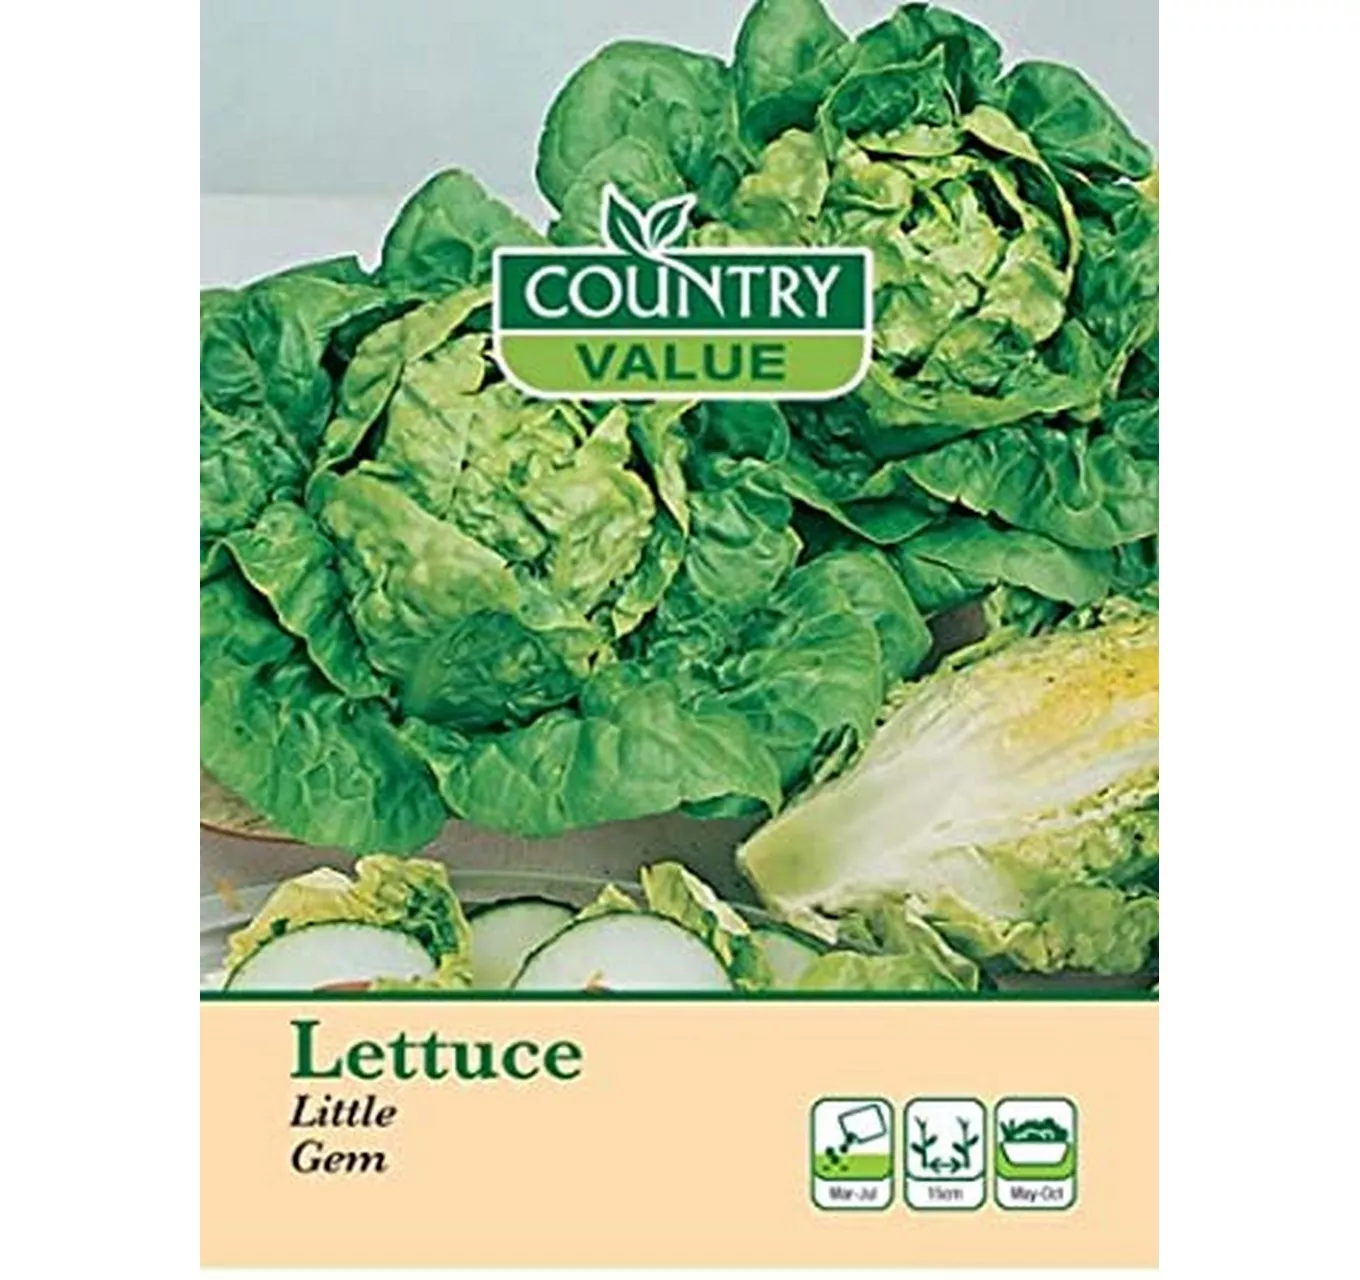 Lettuce Little Gem Country Value